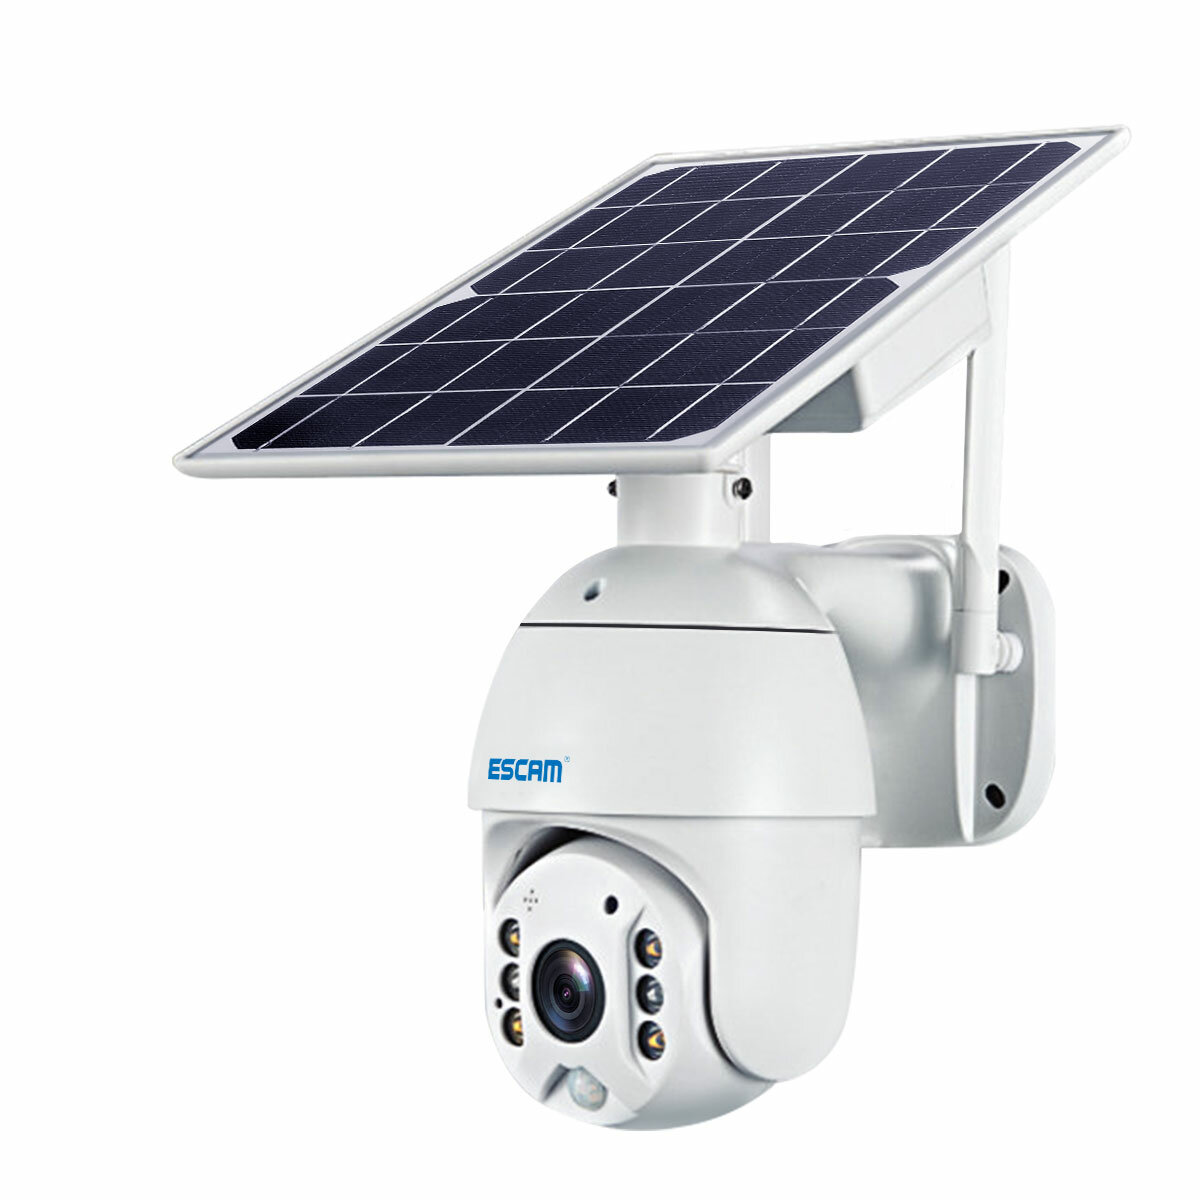 Kamera IP ESCAM QF480 z panelem solarnym z Polski za $119.99 / ~545zł